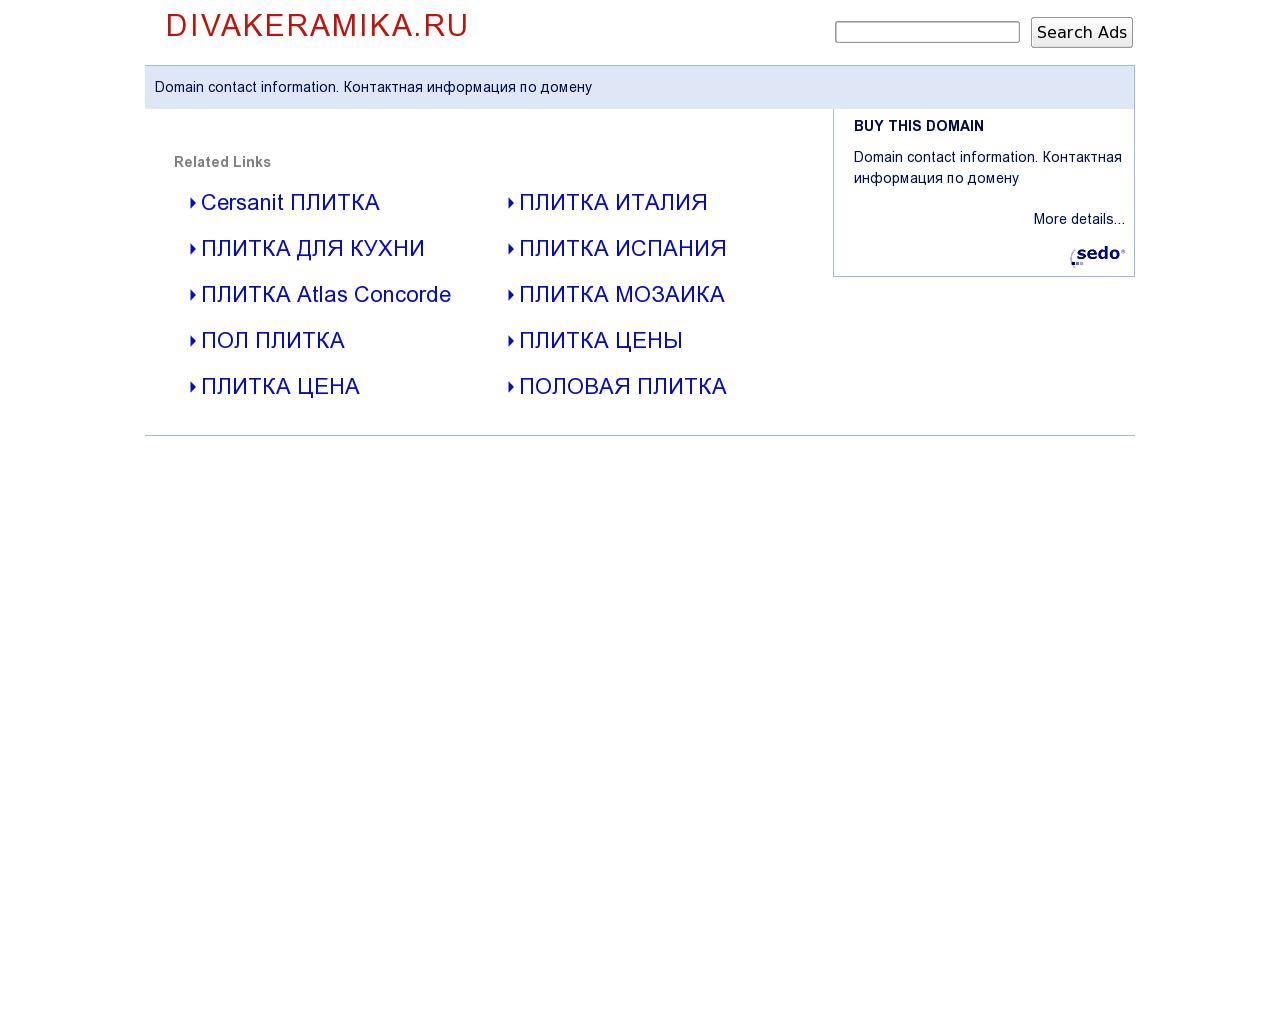 Изображение сайта divakeramika.ru в разрешении 1280x1024